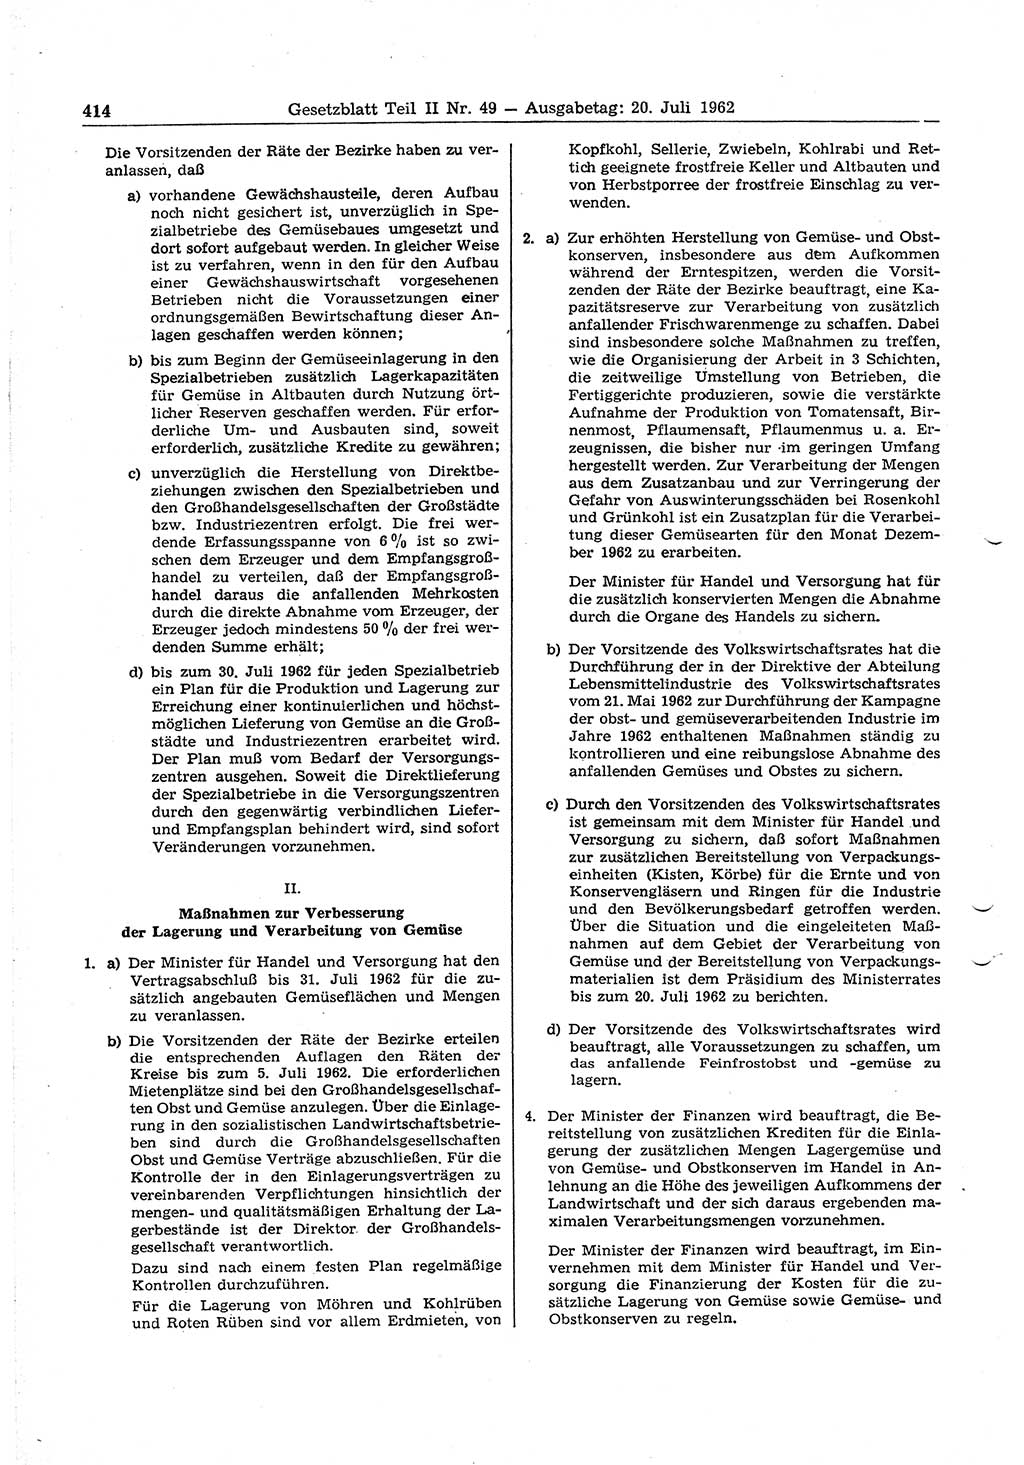 Gesetzblatt (GBl.) der Deutschen Demokratischen Republik (DDR) Teil ⅠⅠ 1962, Seite 414 (GBl. DDR ⅠⅠ 1962, S. 414)